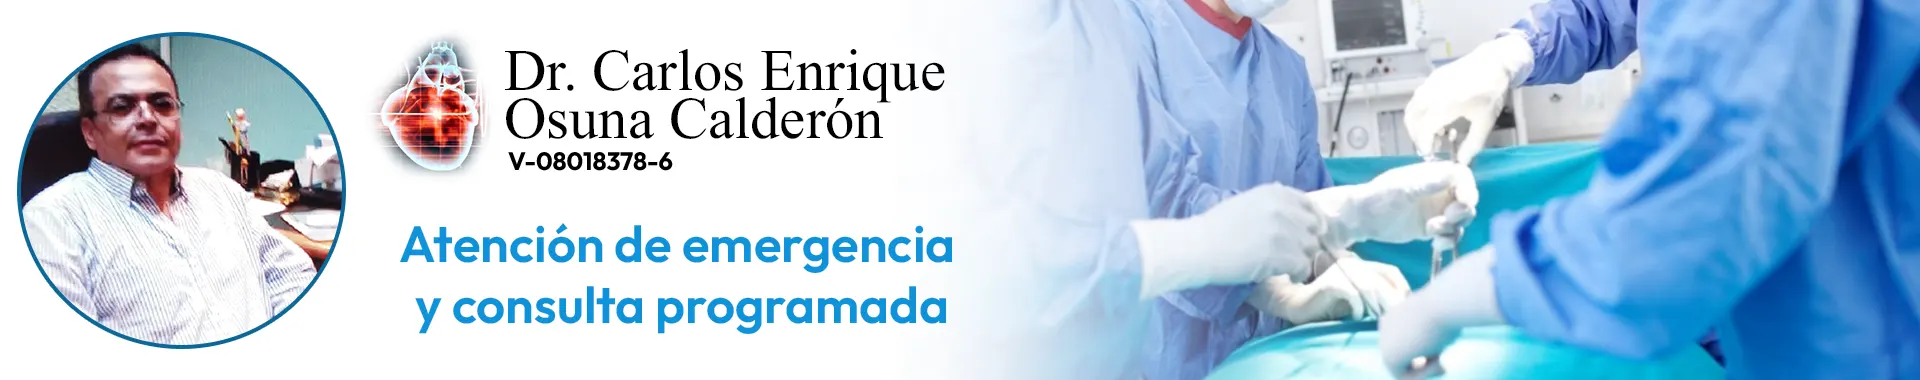 Imagen 2 del perfil de Dr. Carlos Enrique Osuna Calderón